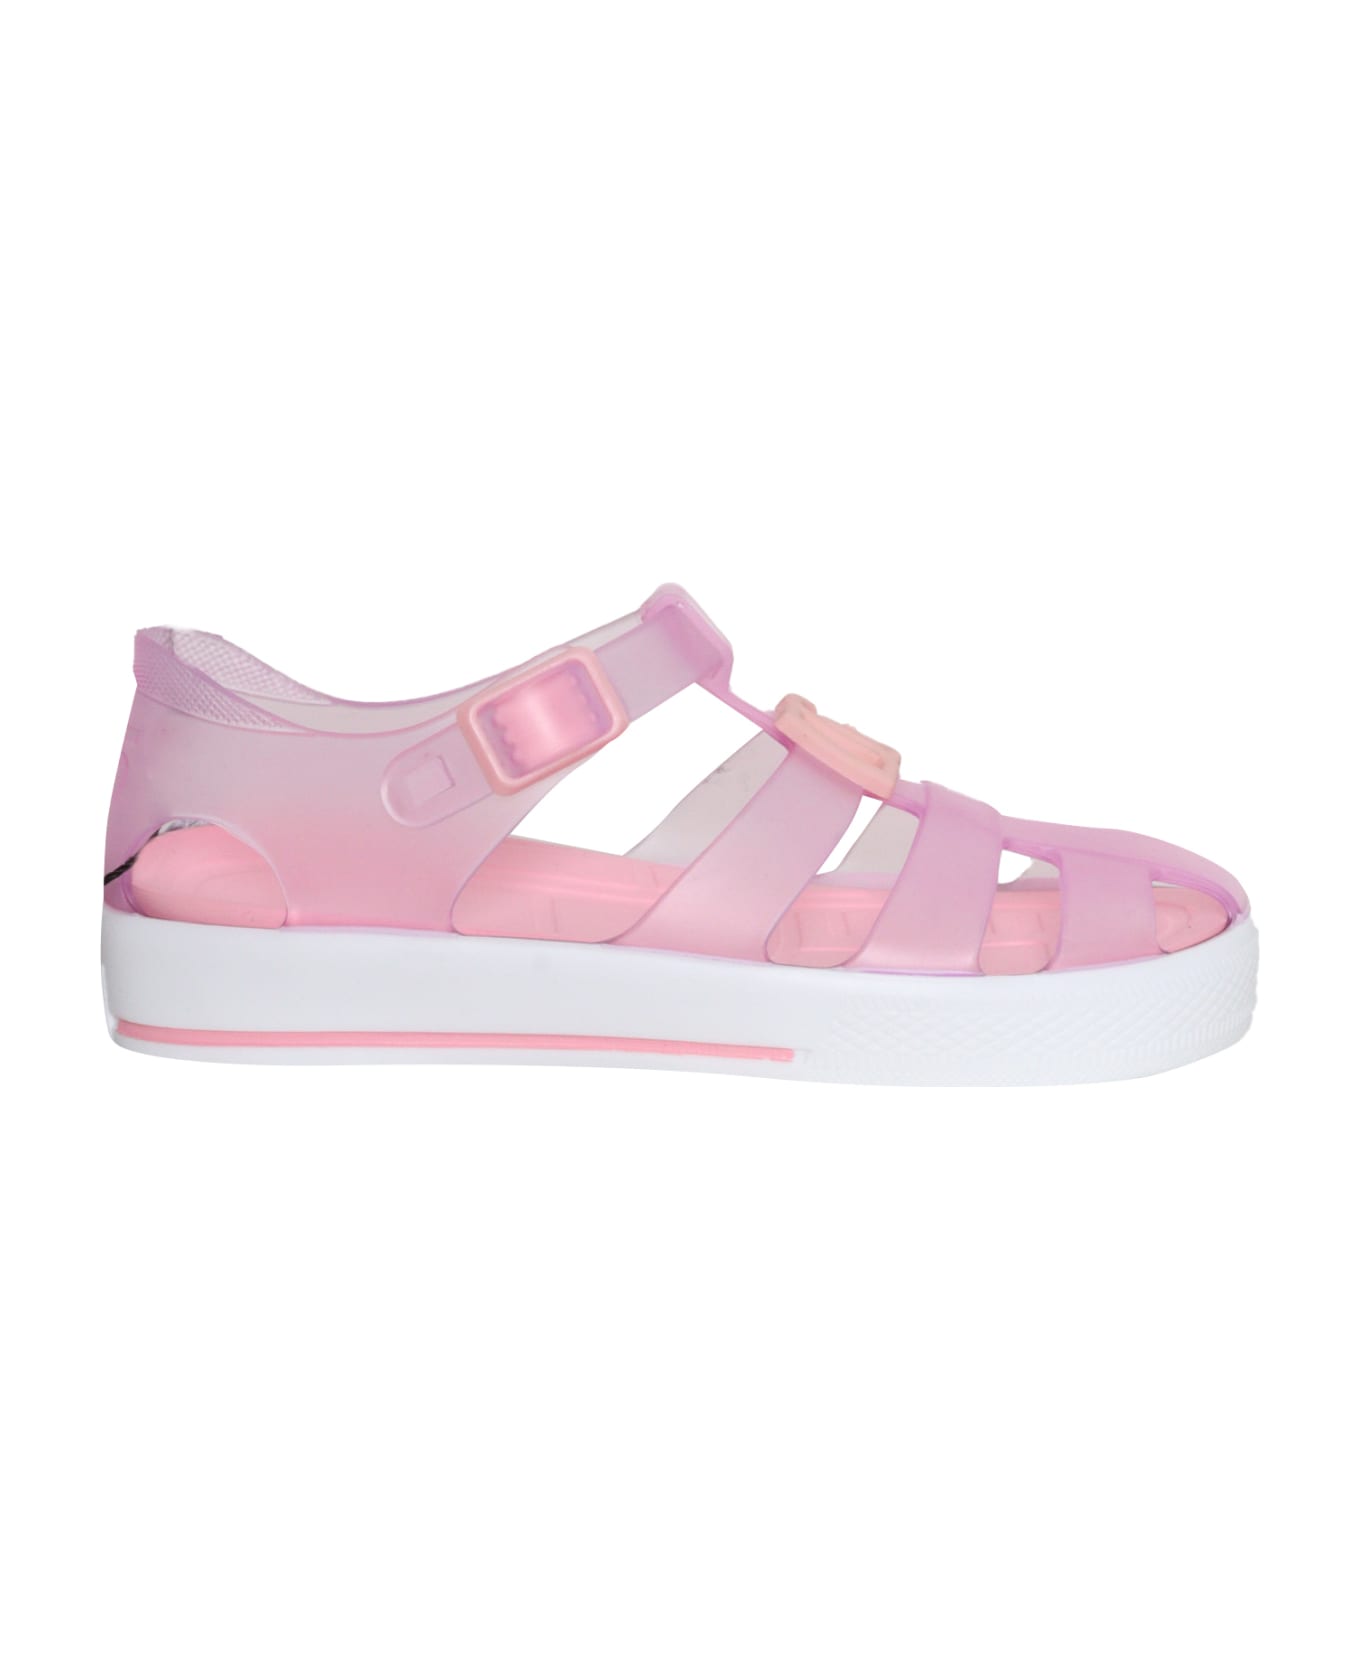 Dolce & Gabbana Pink Spider Sandals - PINK